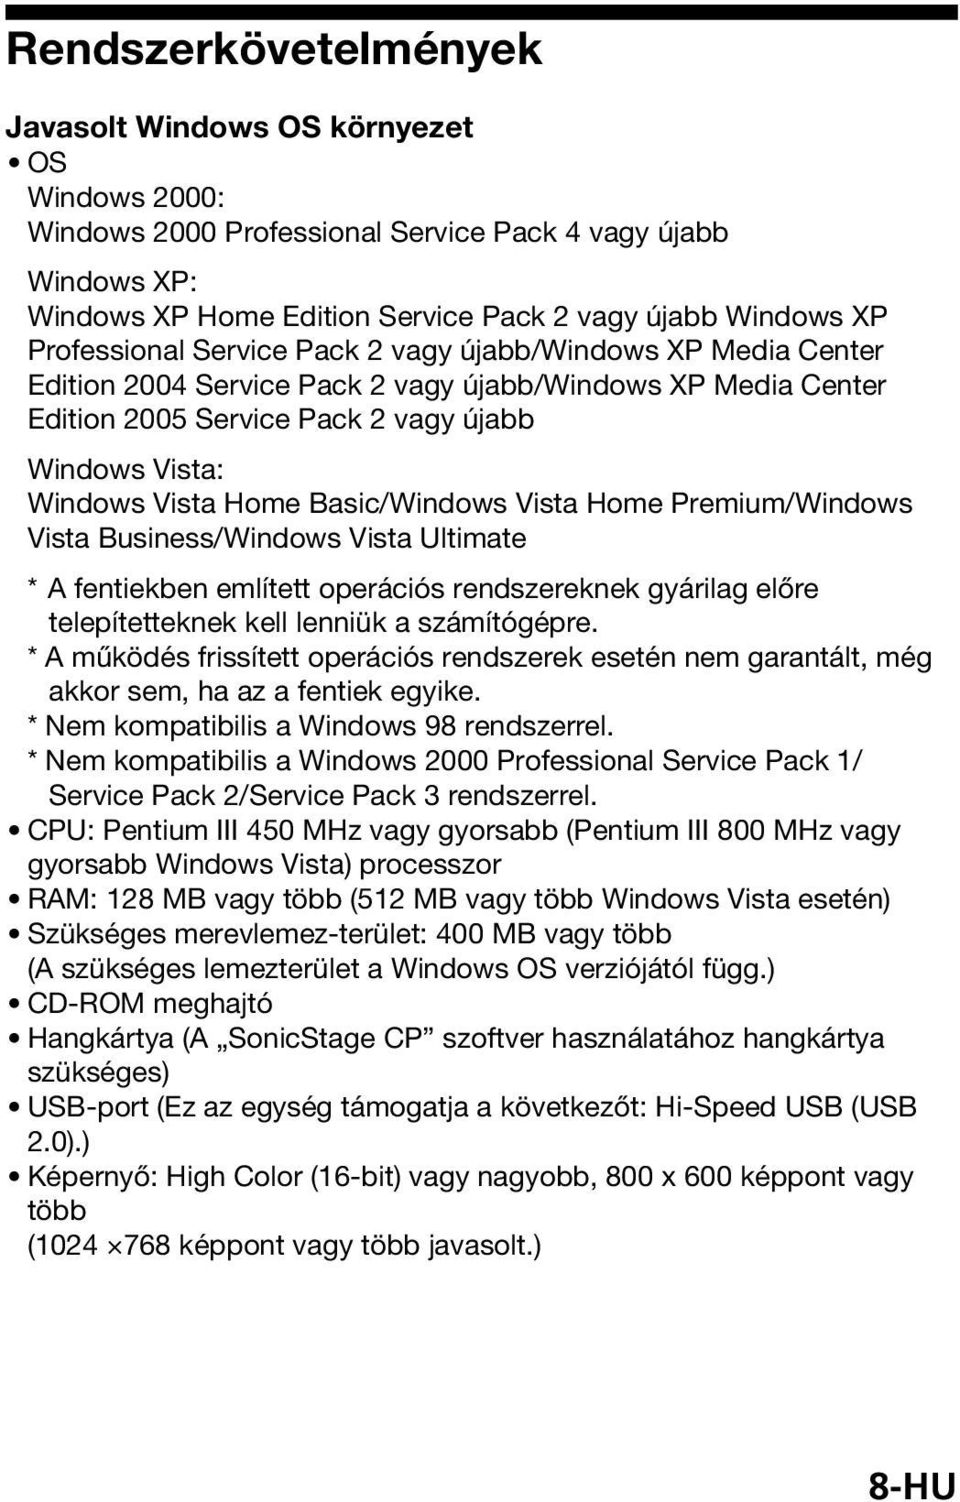 Basic/Windows Vista Home Premium/Windows Vista Business/Windows Vista Ultimate *A fentiekben említett operációs rendszereknek gyárilag előre telepítetteknek kell lenniük a számítógépre.